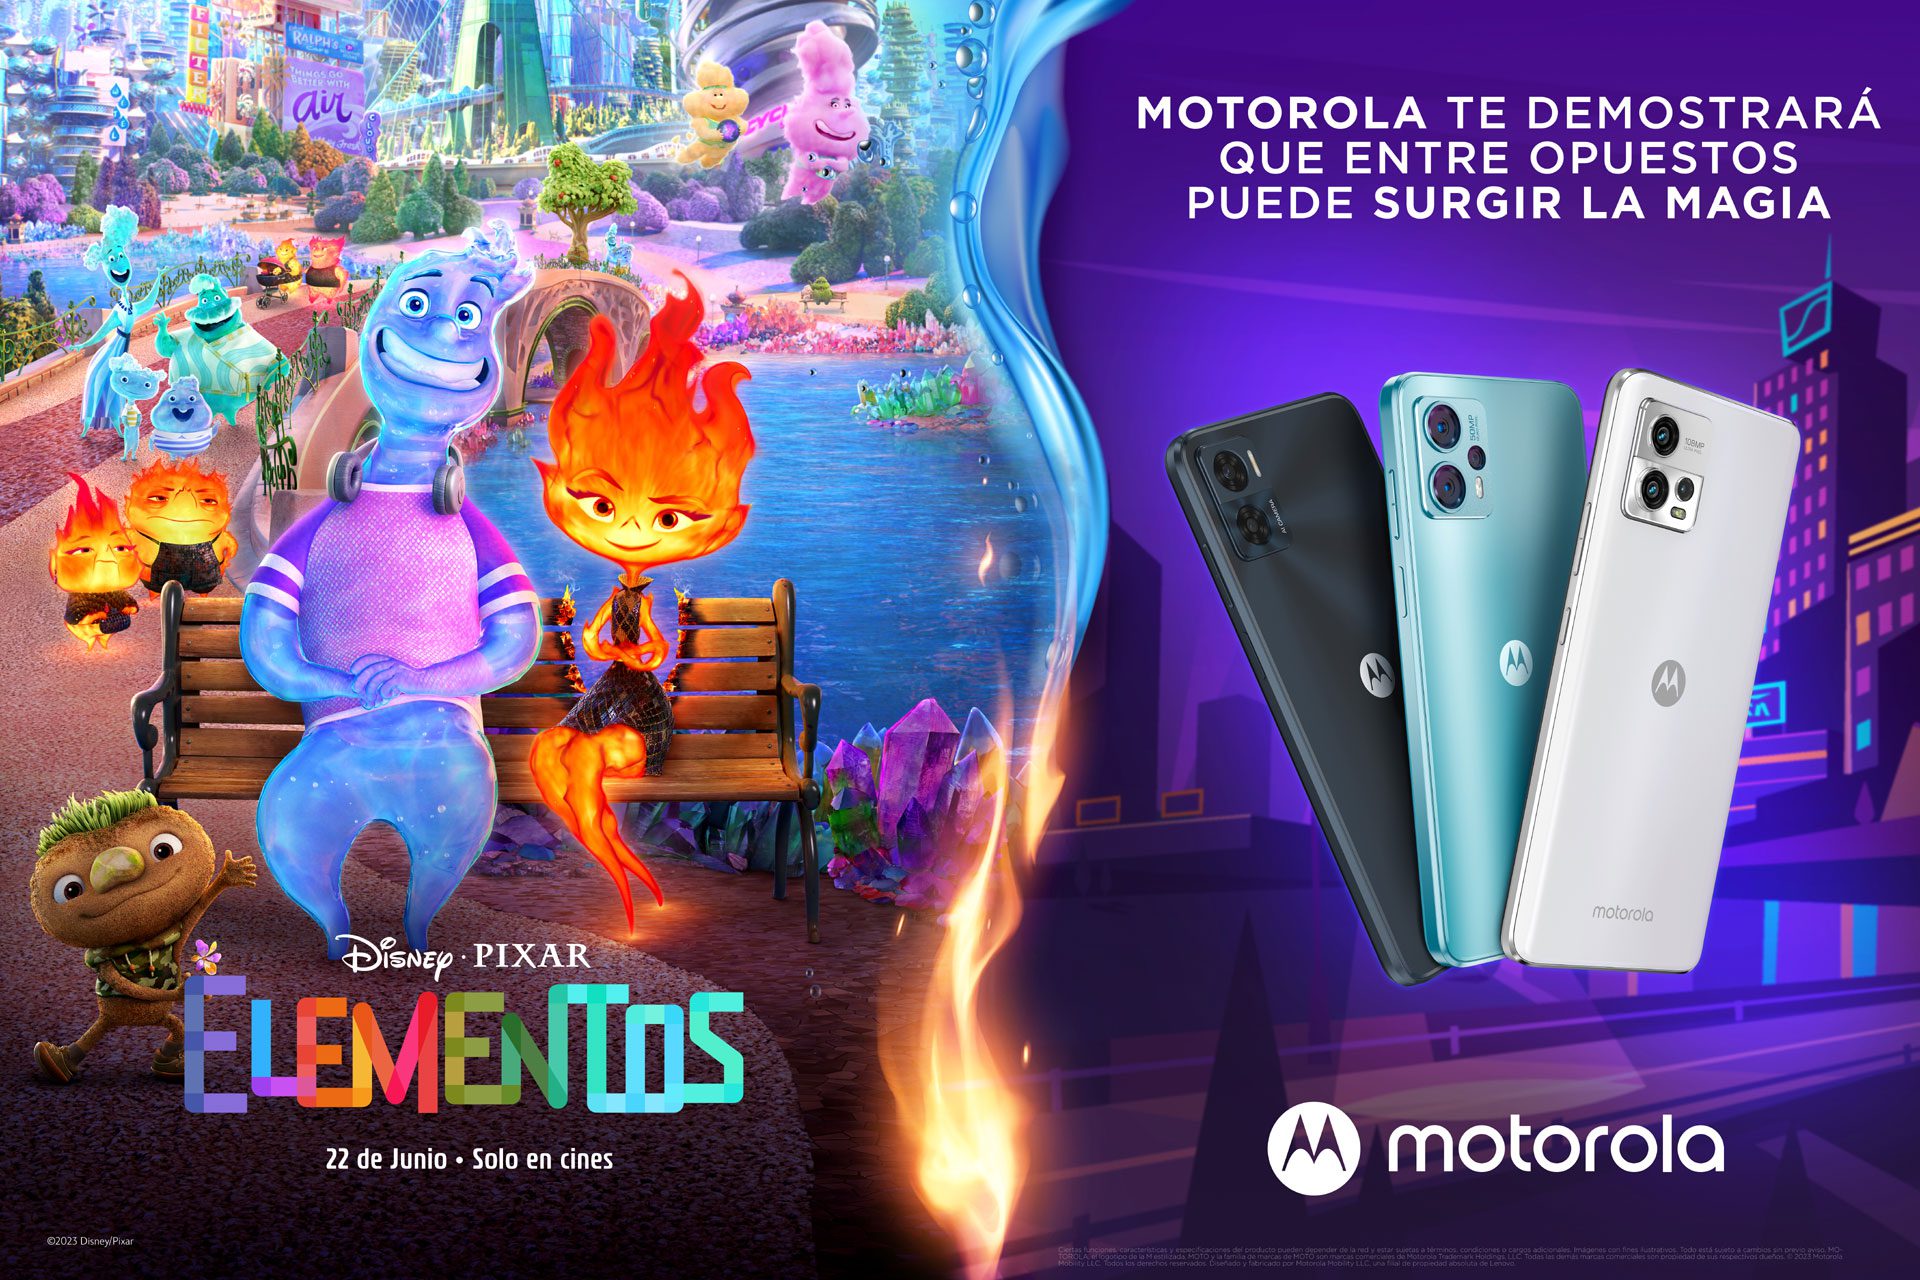 Motorola presenta una nueva experiencia inspirada en la película de Disney Pixar, Elementos